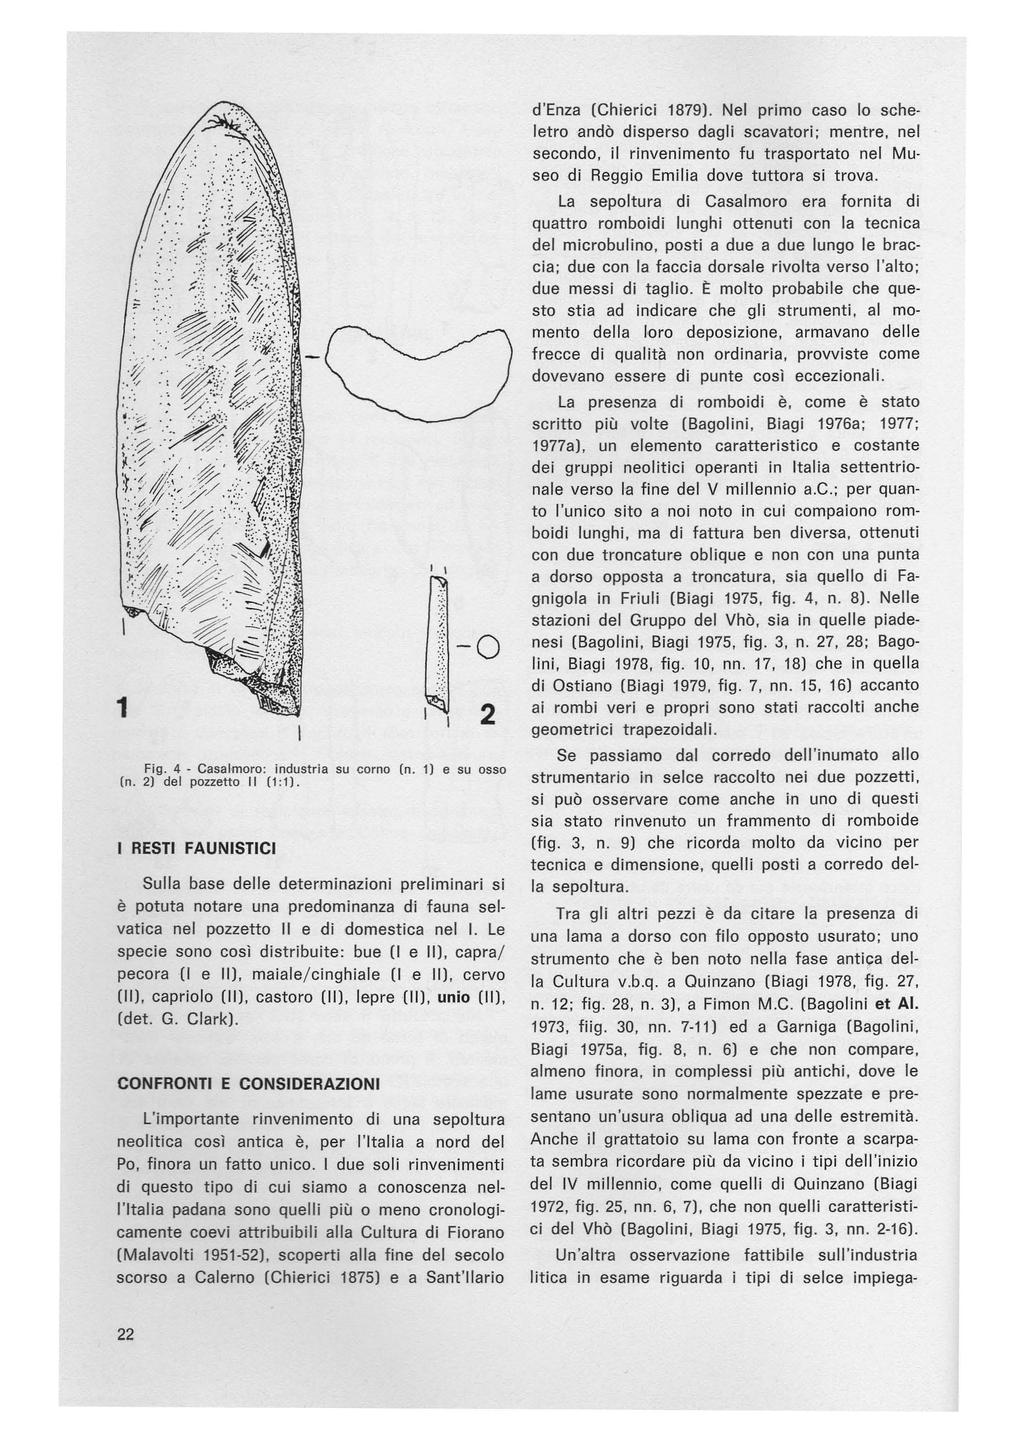 I I.:. '. { )-o Fig. 4 - Casalmoro: industria su corno (n. 1) e su osso (n. 2) del pozzetto Il (1:1).